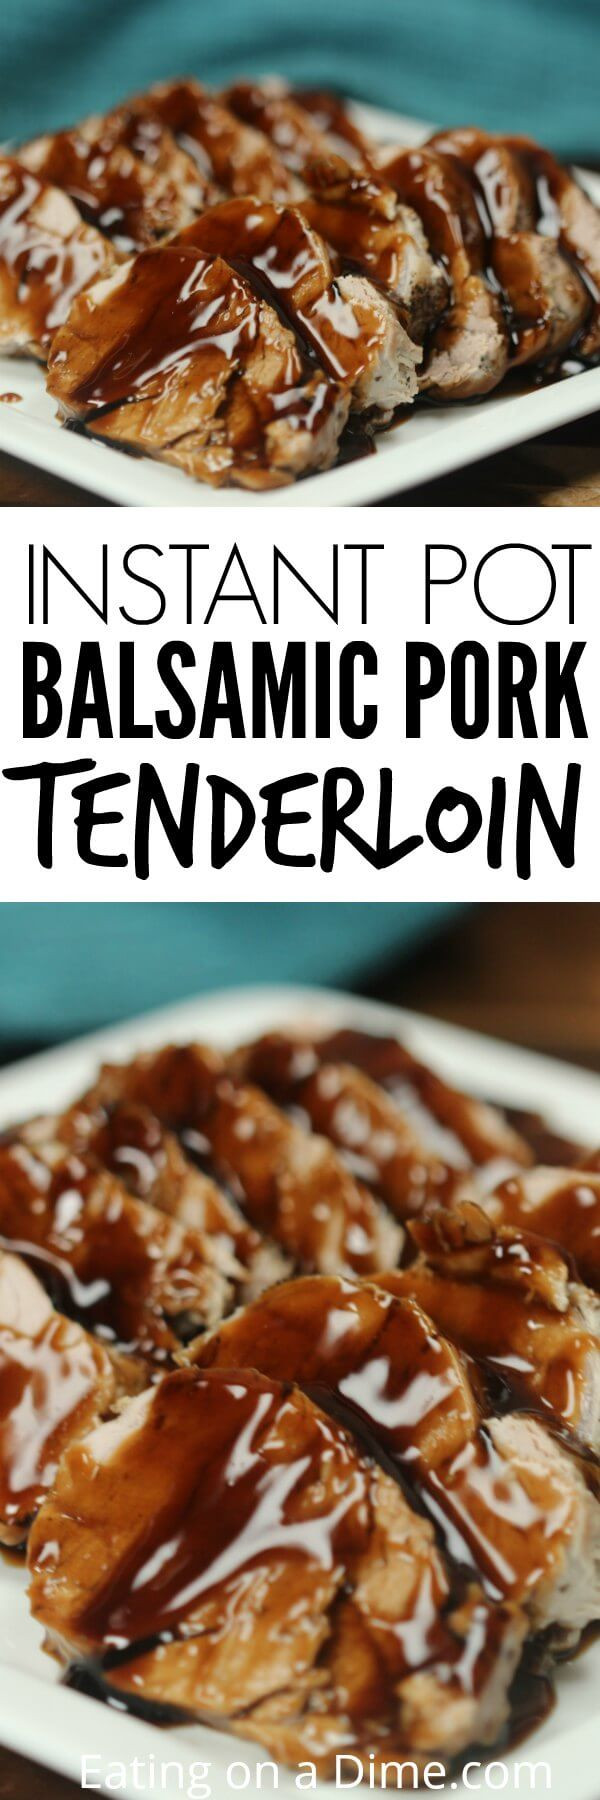 Beef Tenderloin Instant Pot
 Pork Tenderloin Pressure Cooker Recipe